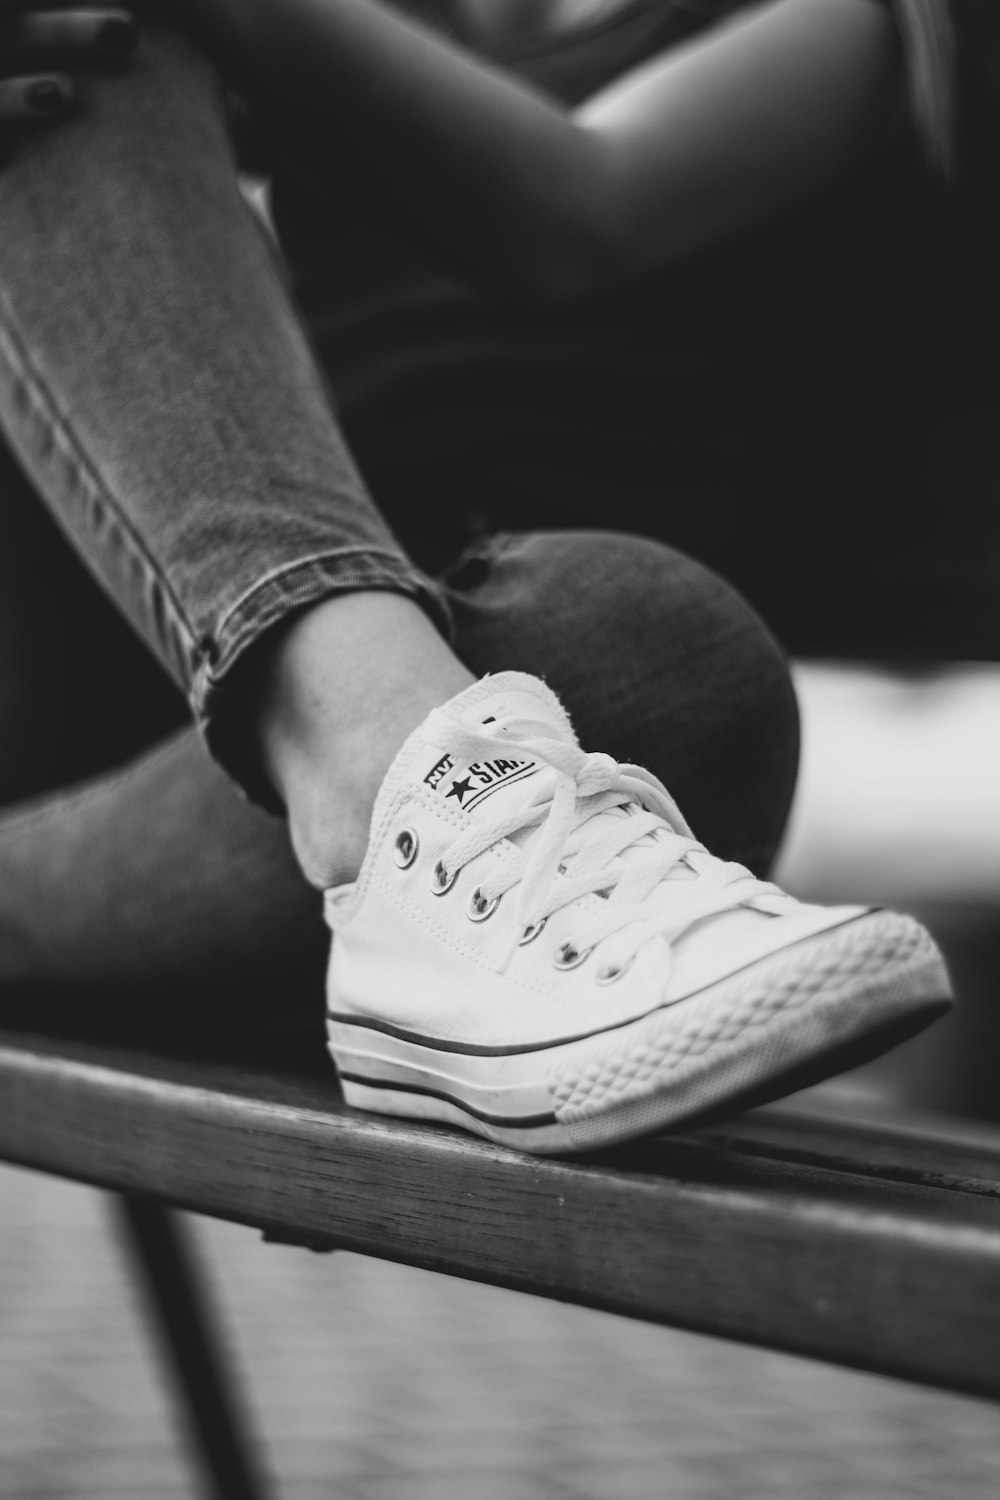 Foto en escala de grises de una persona en jeans y zapatillas de deporte